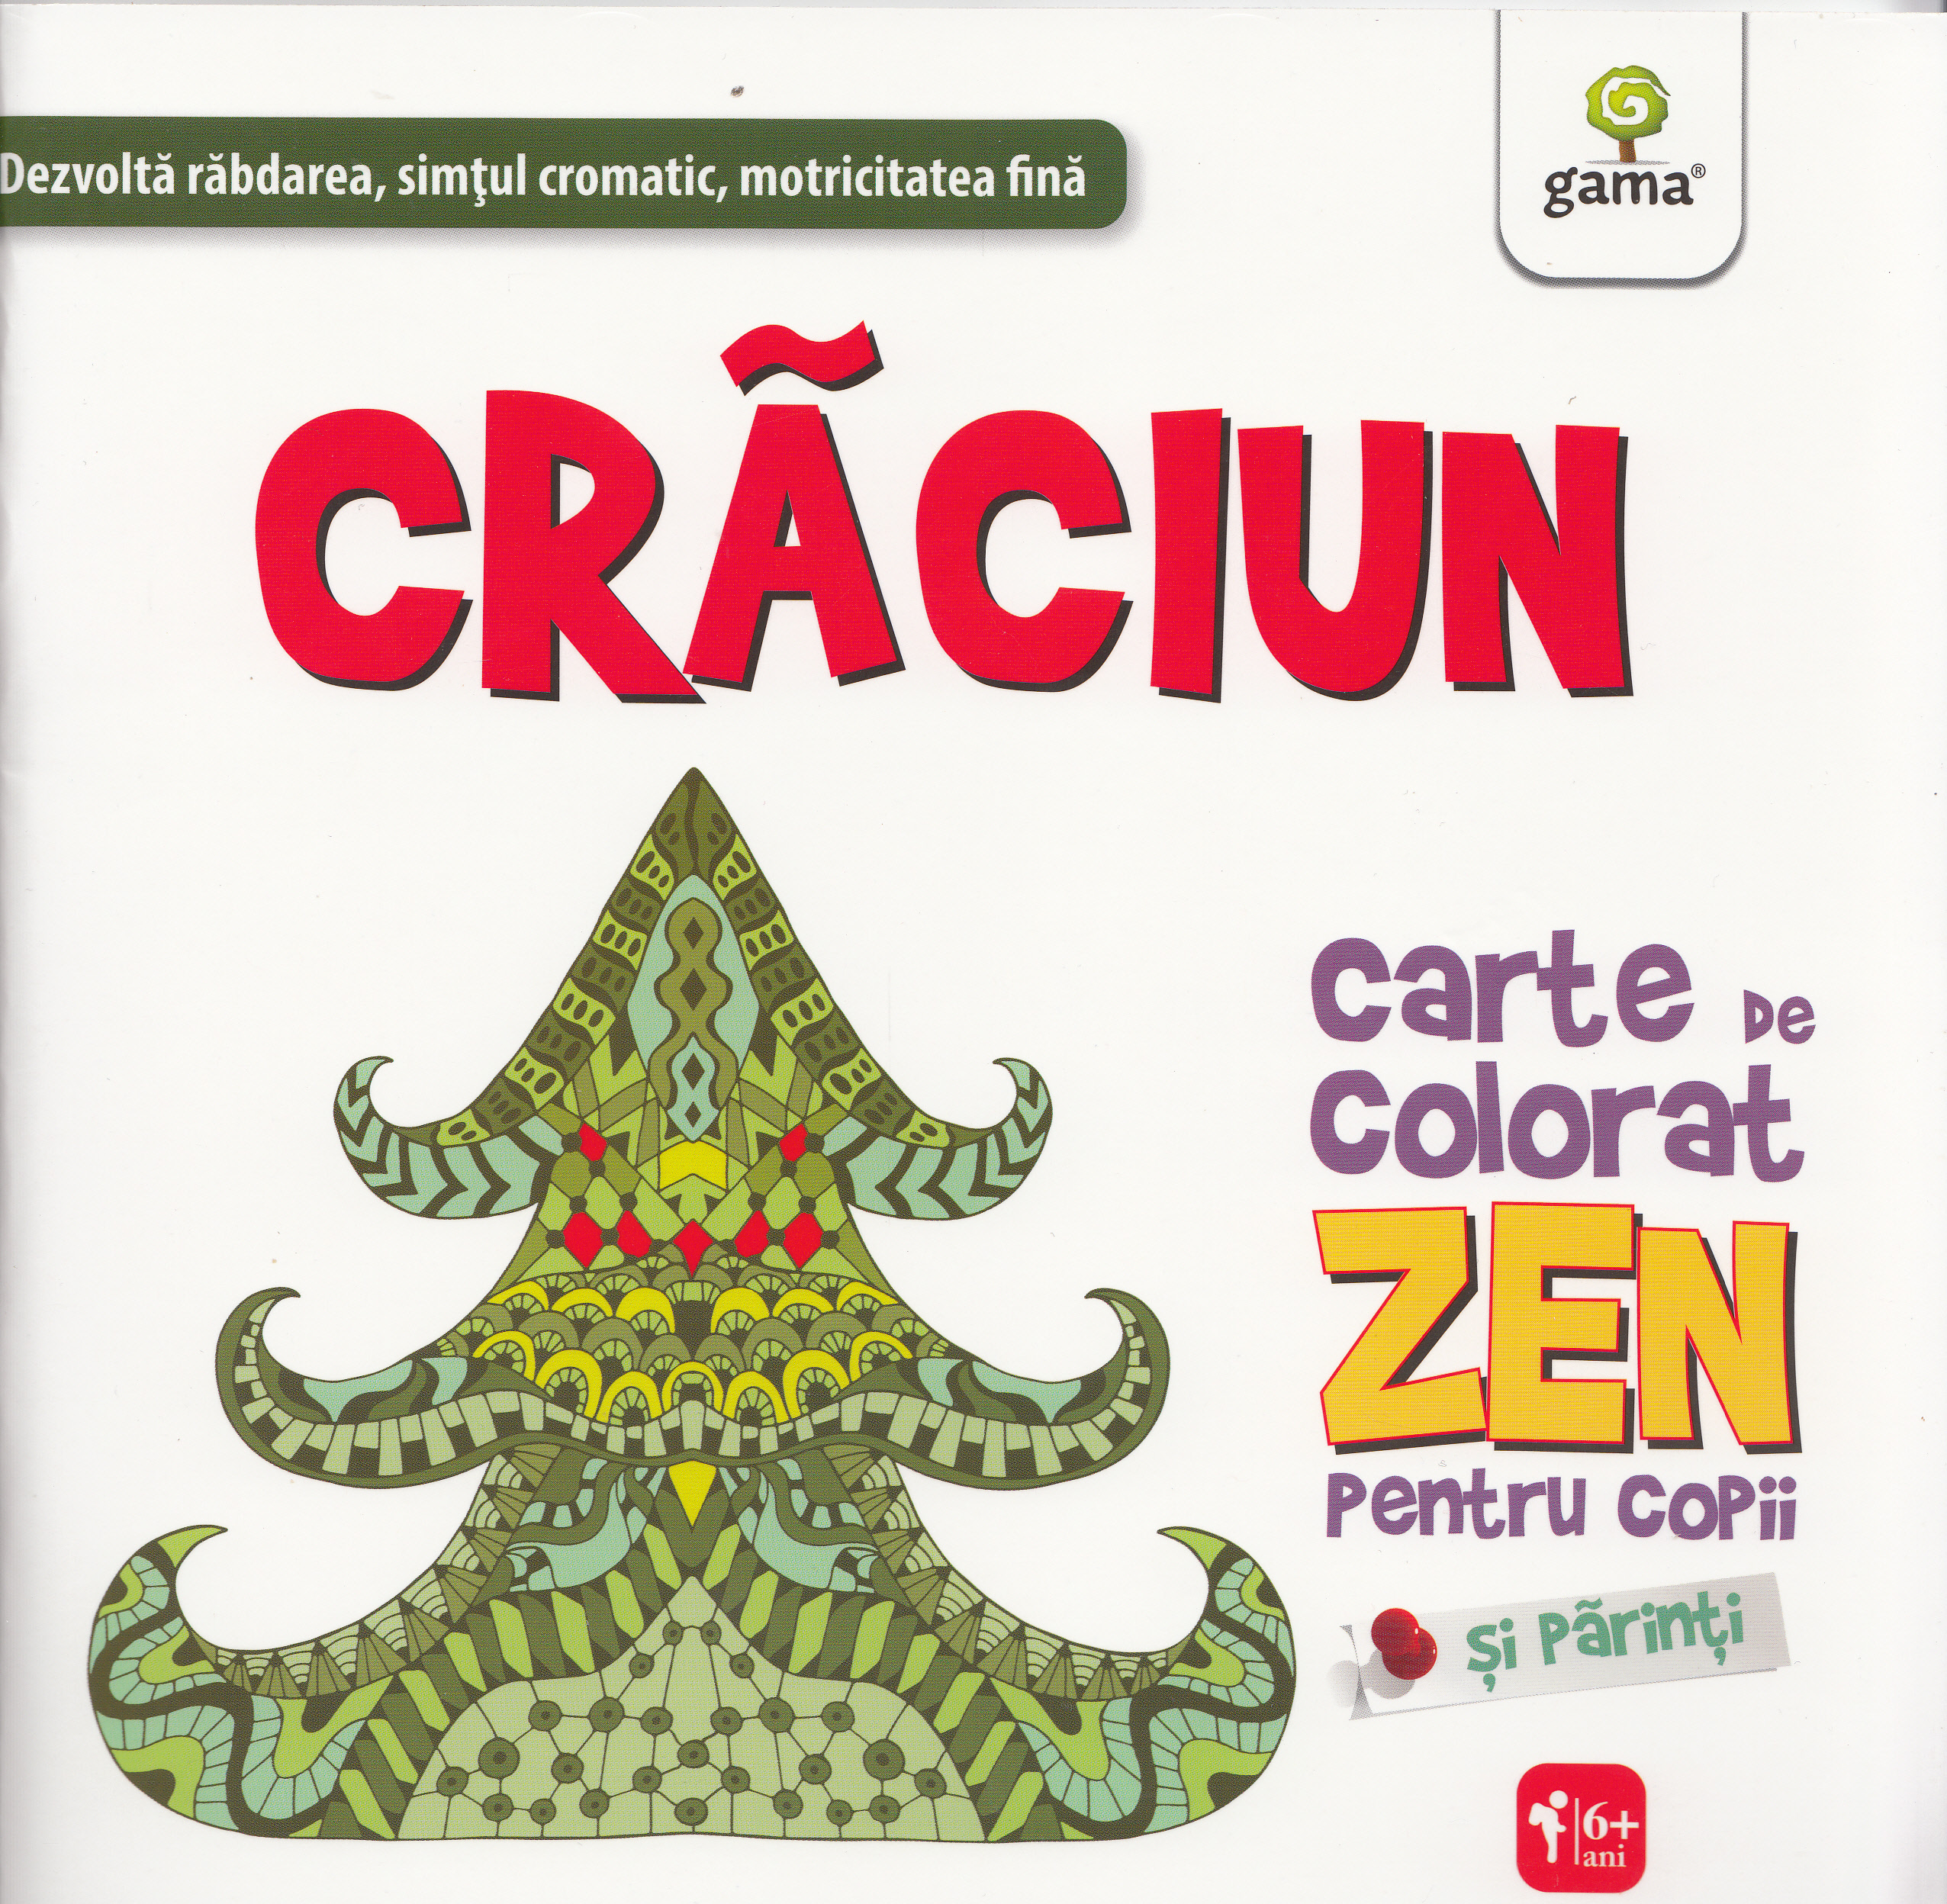 Craciun - Carte de colorat zen pentru copii si parinti